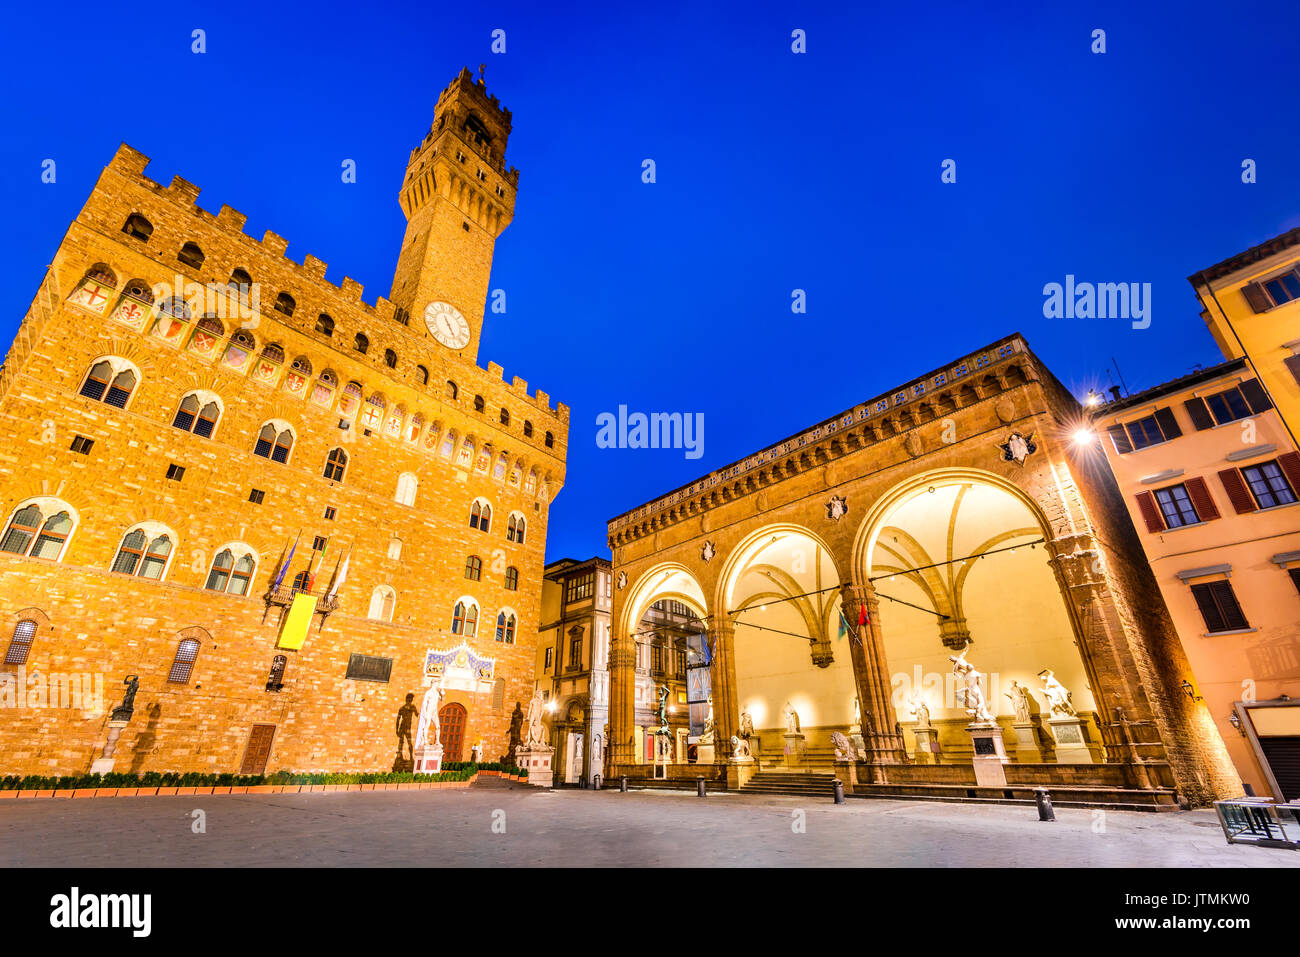 Florenz, Italien. Palazzo Vecchio (oder Palazzo della Signoria) und Loggia dei Lanzi, Dämmerung Szene in der Toskana. Stockfoto